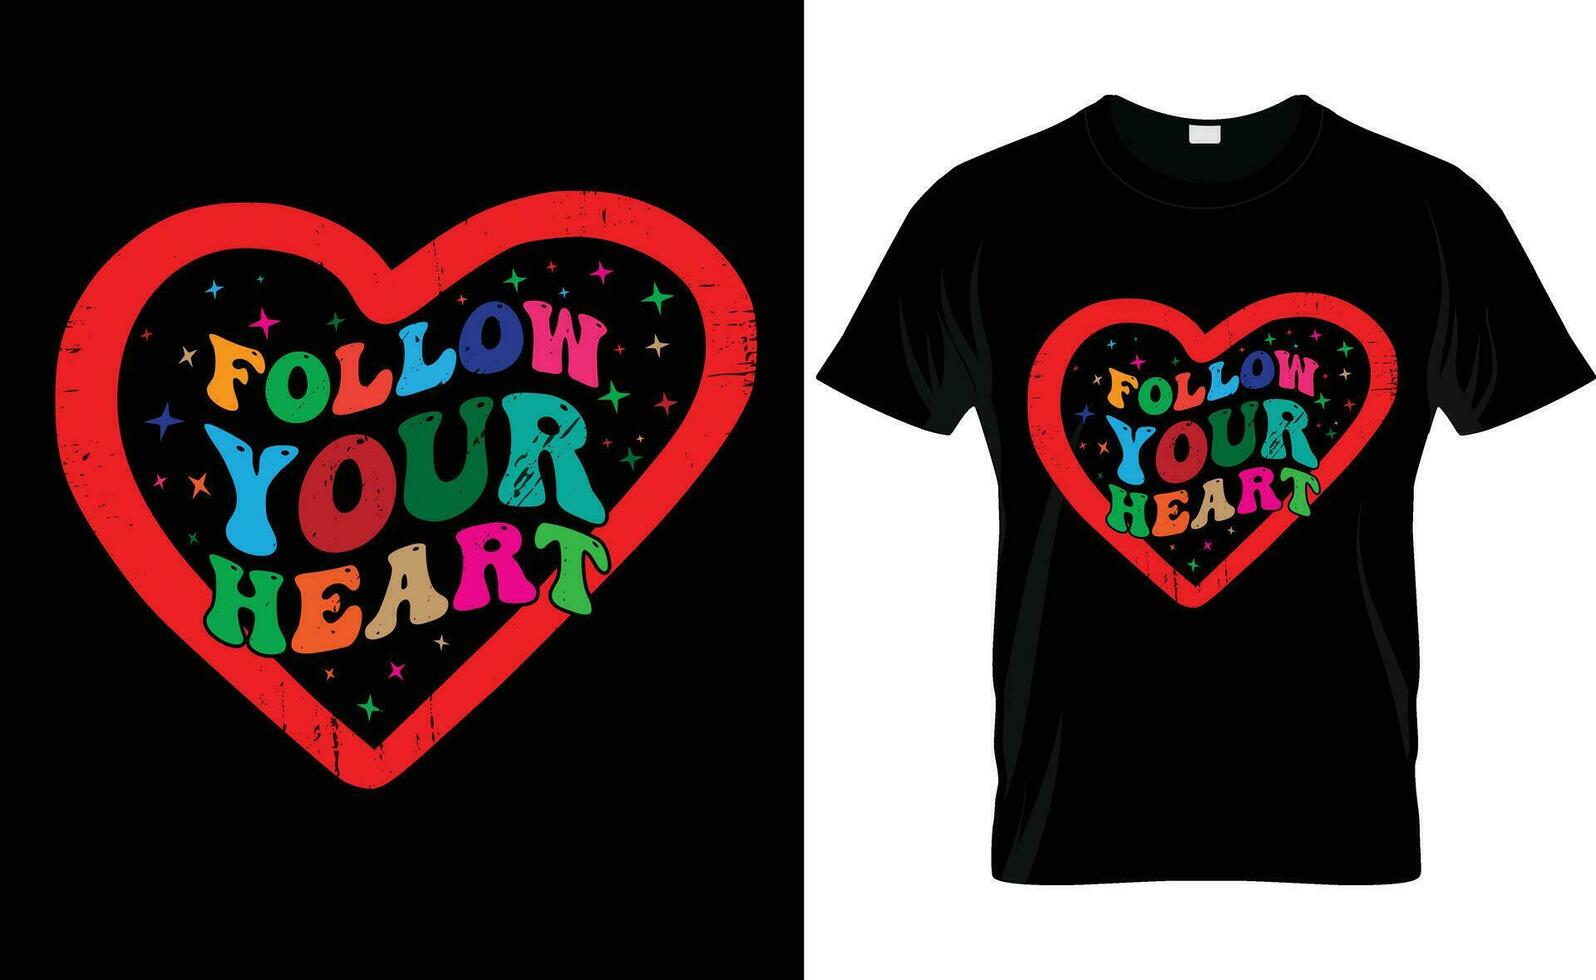 Följ din hjärta retro fri typografi t-shirt design vektor